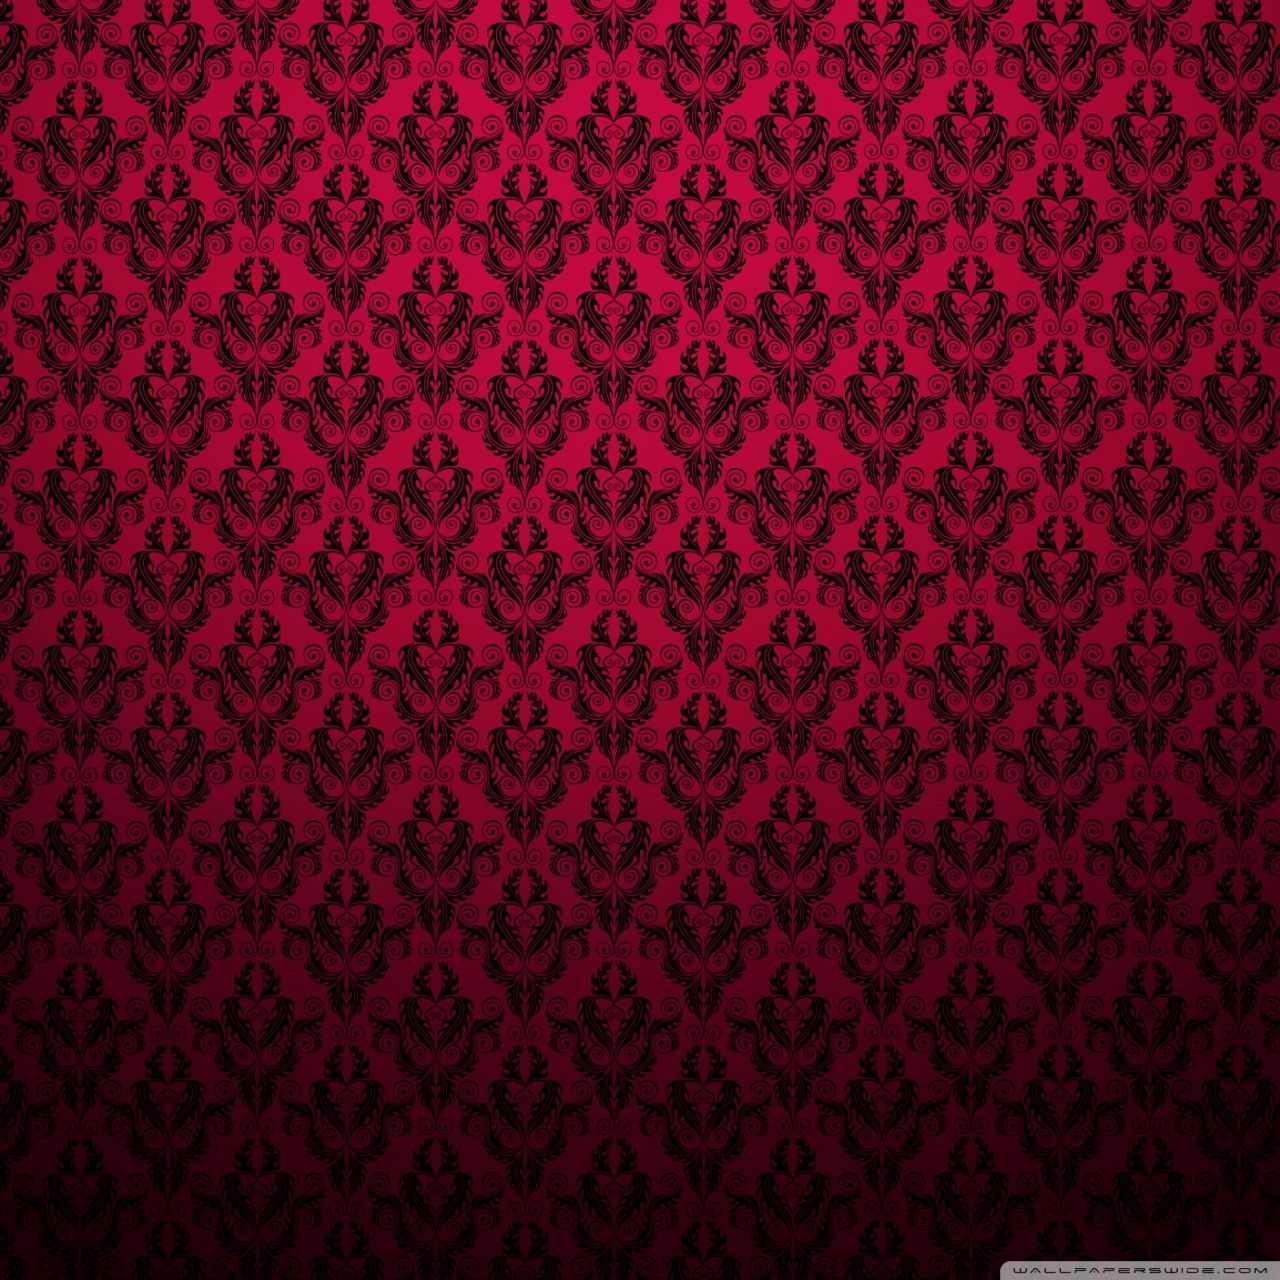 Red Pattern Ultra HD Desktop Background Wallpaper for 4K UHD TV, Widescreen & UltraWide Desktop & Laptop, Tablet